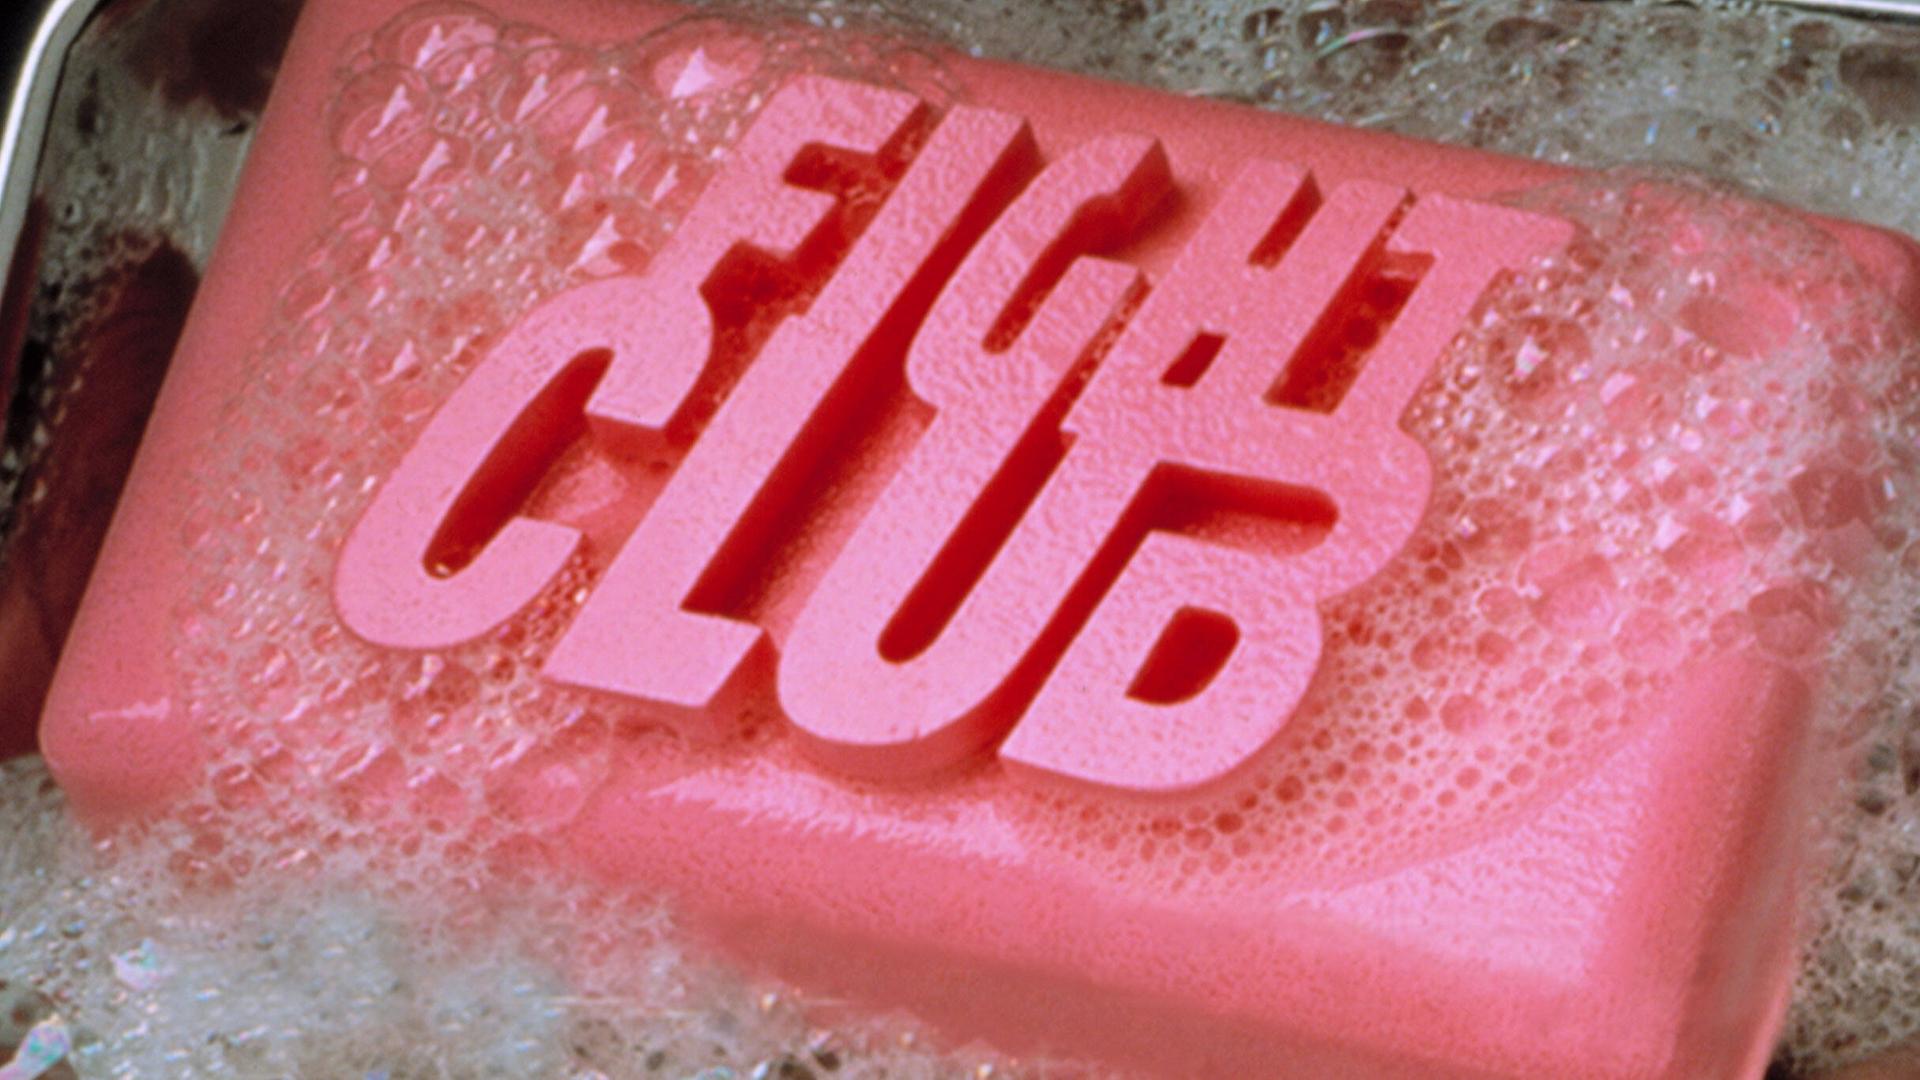 Nahaufnahme eines pinkfarbenen Stück Seife mit der Aufschrift "Fight Club"